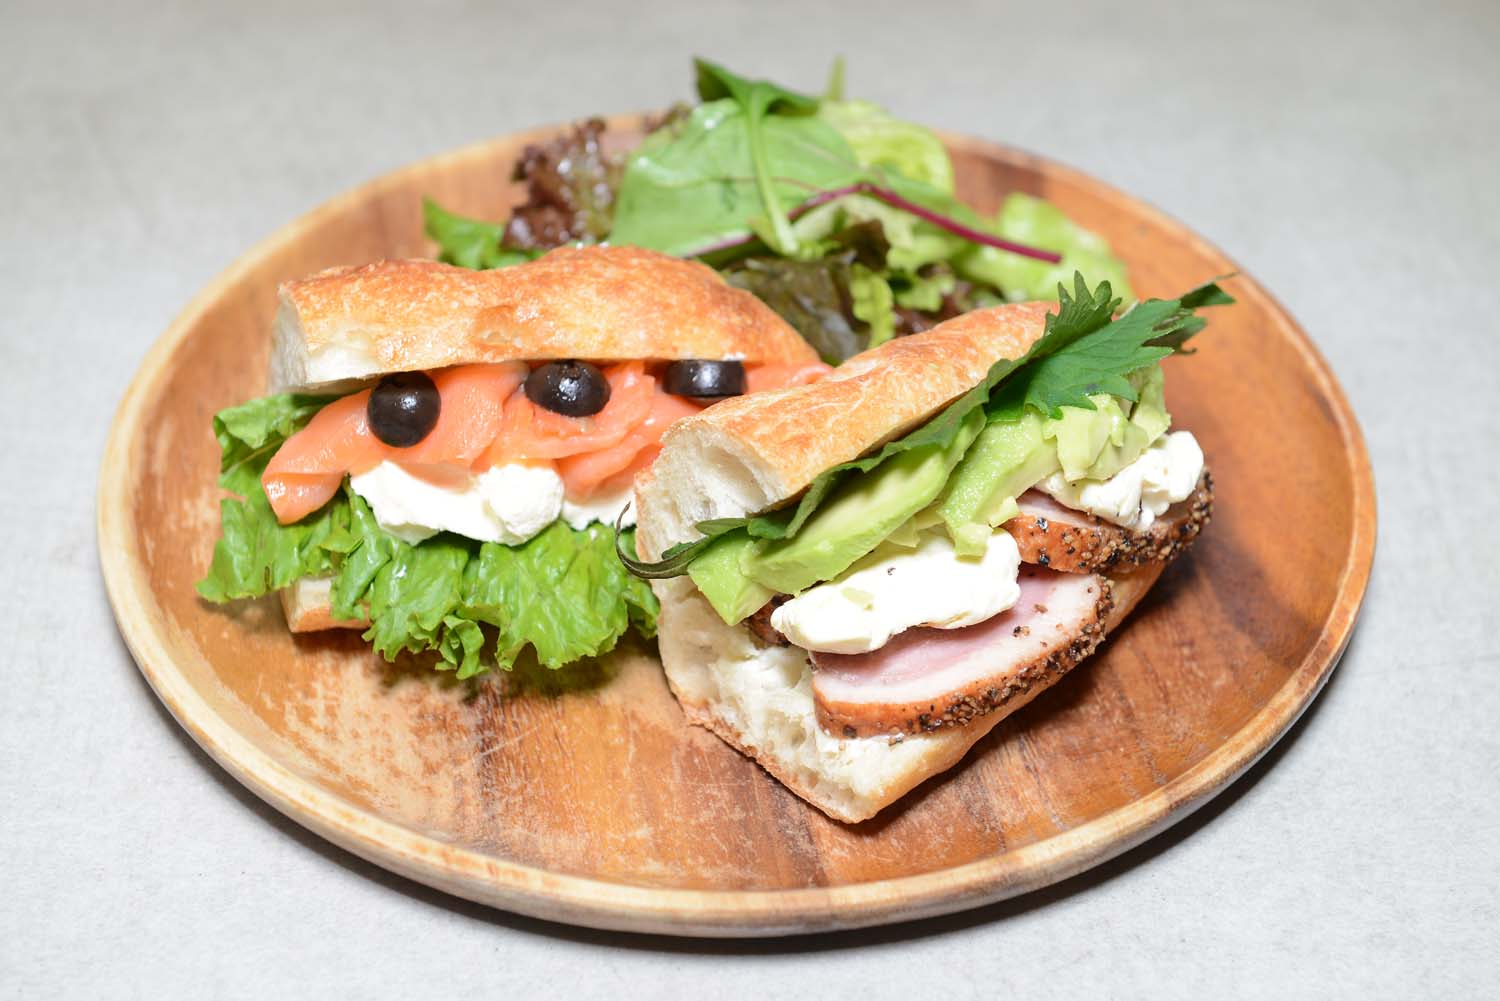 お得なセットのランチA。サンドイッチが1種類のランチBのほか、モーニングやパイなどとのドリンクセットなども豊富。